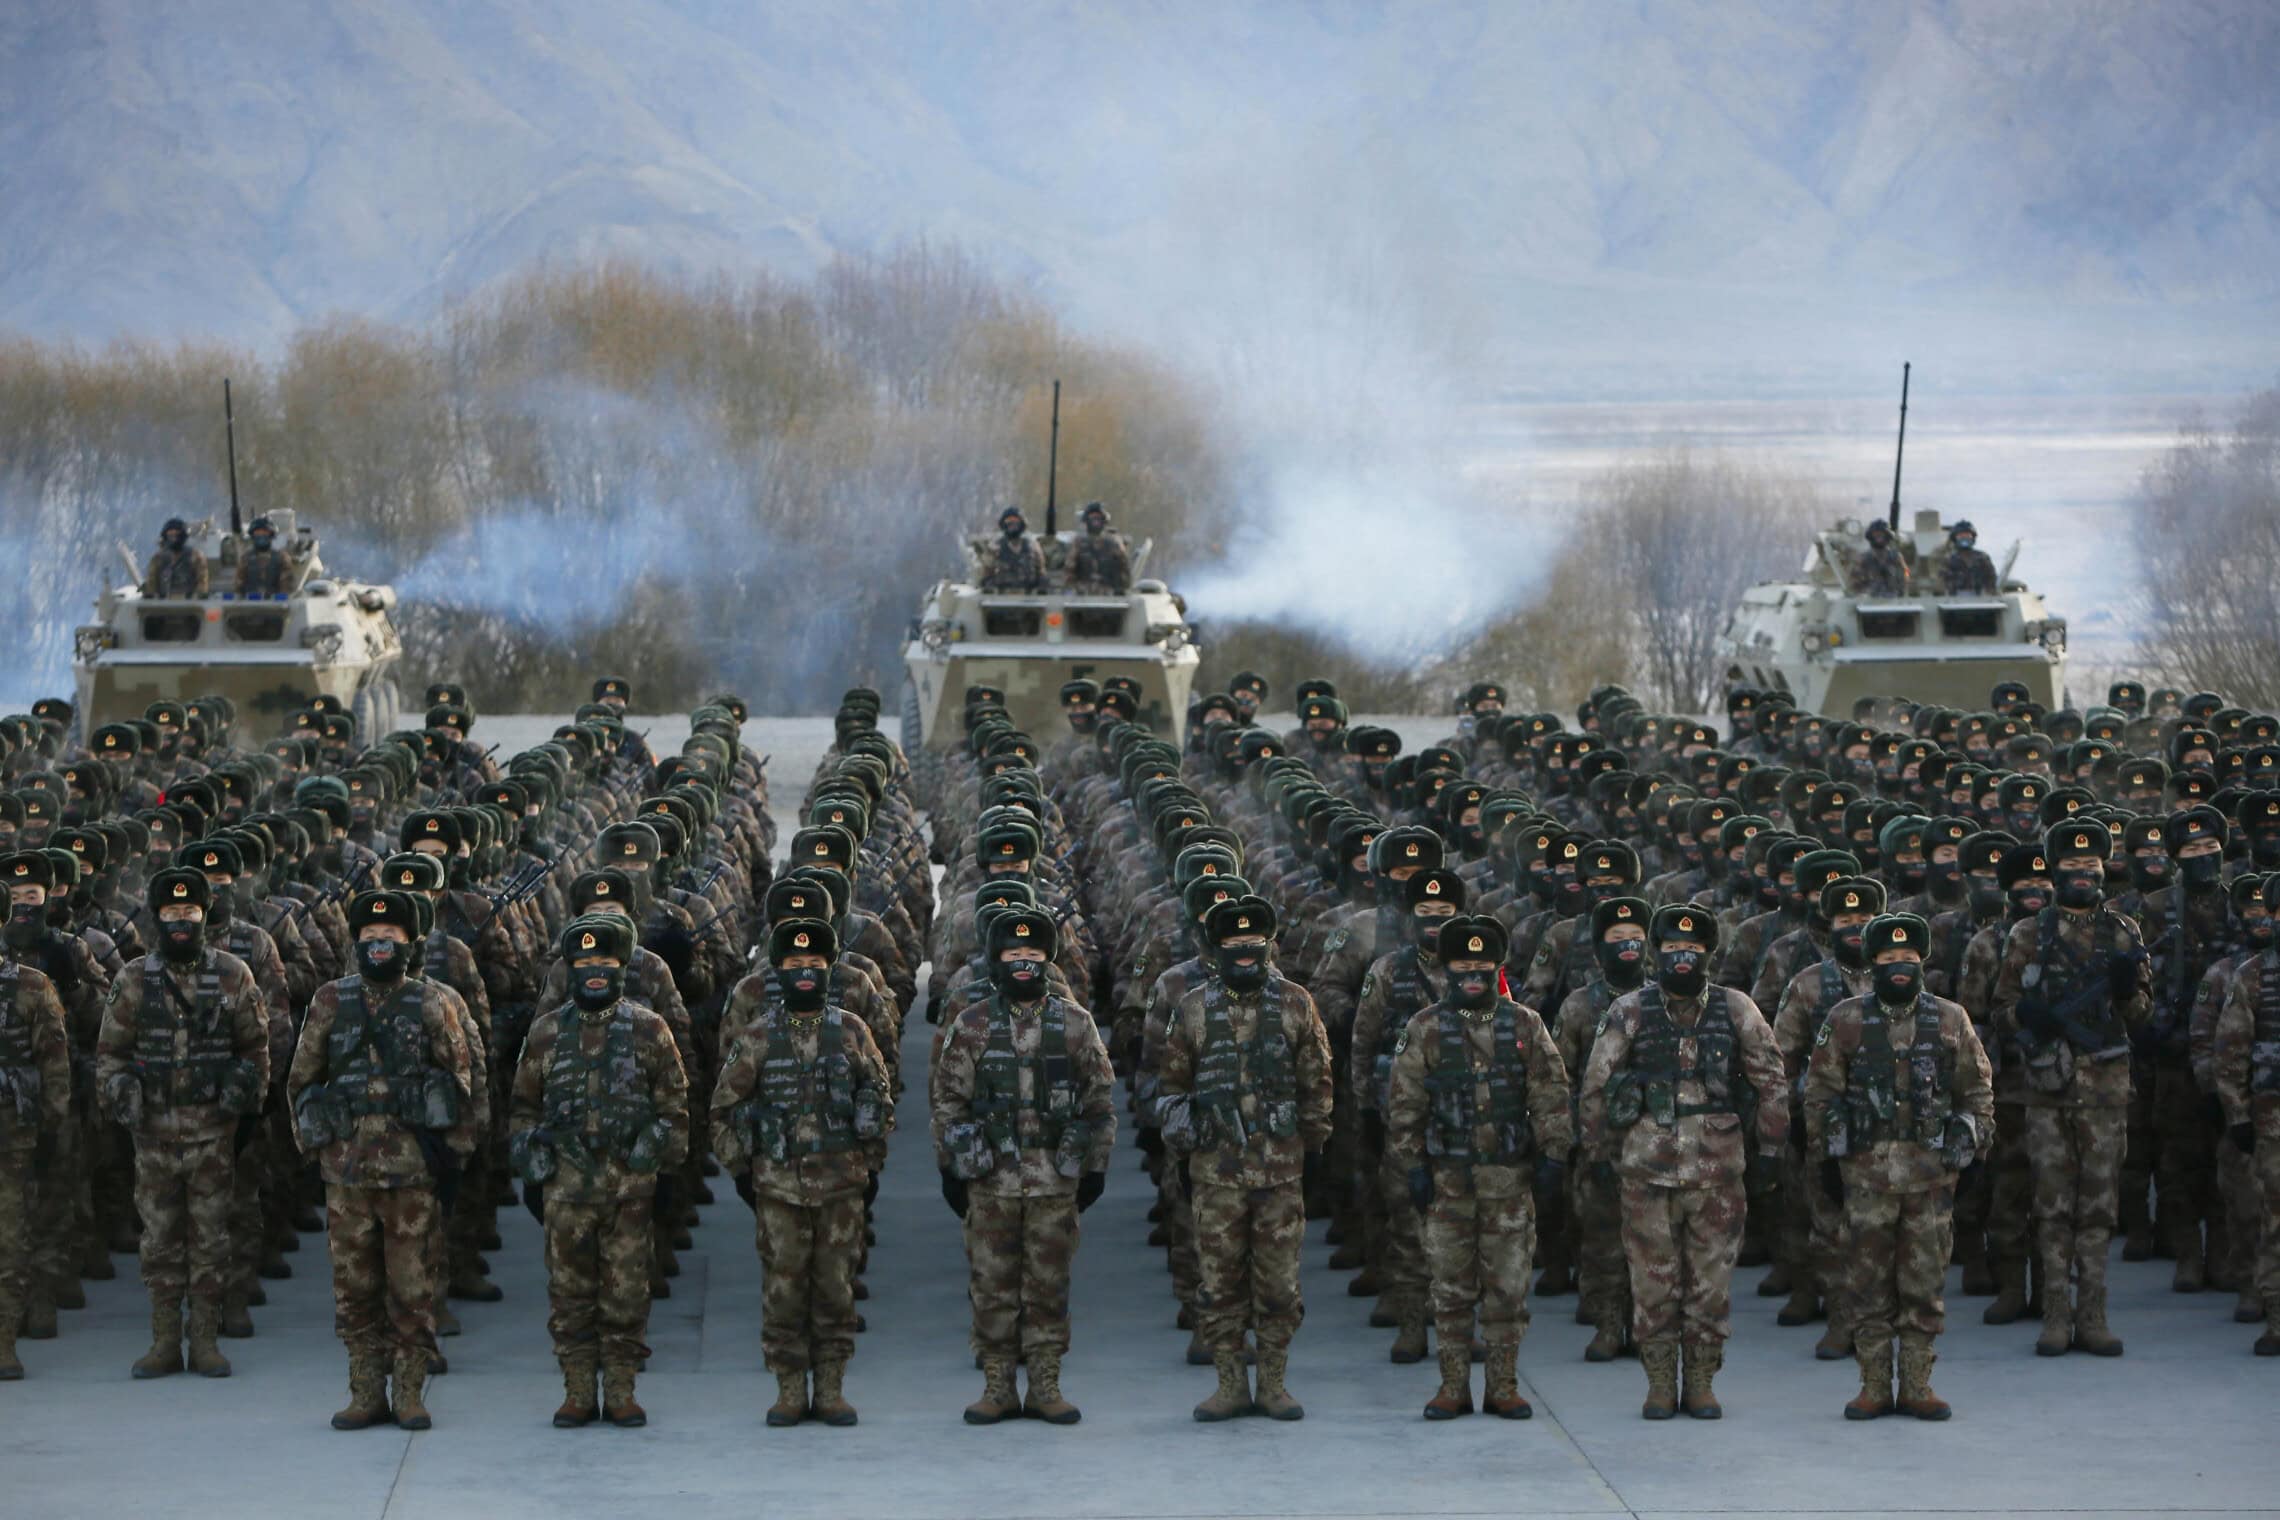 צבא סין באימונים על רקע המתיחות מול טייוואן, ינואר 2021 (צילום: AFP)